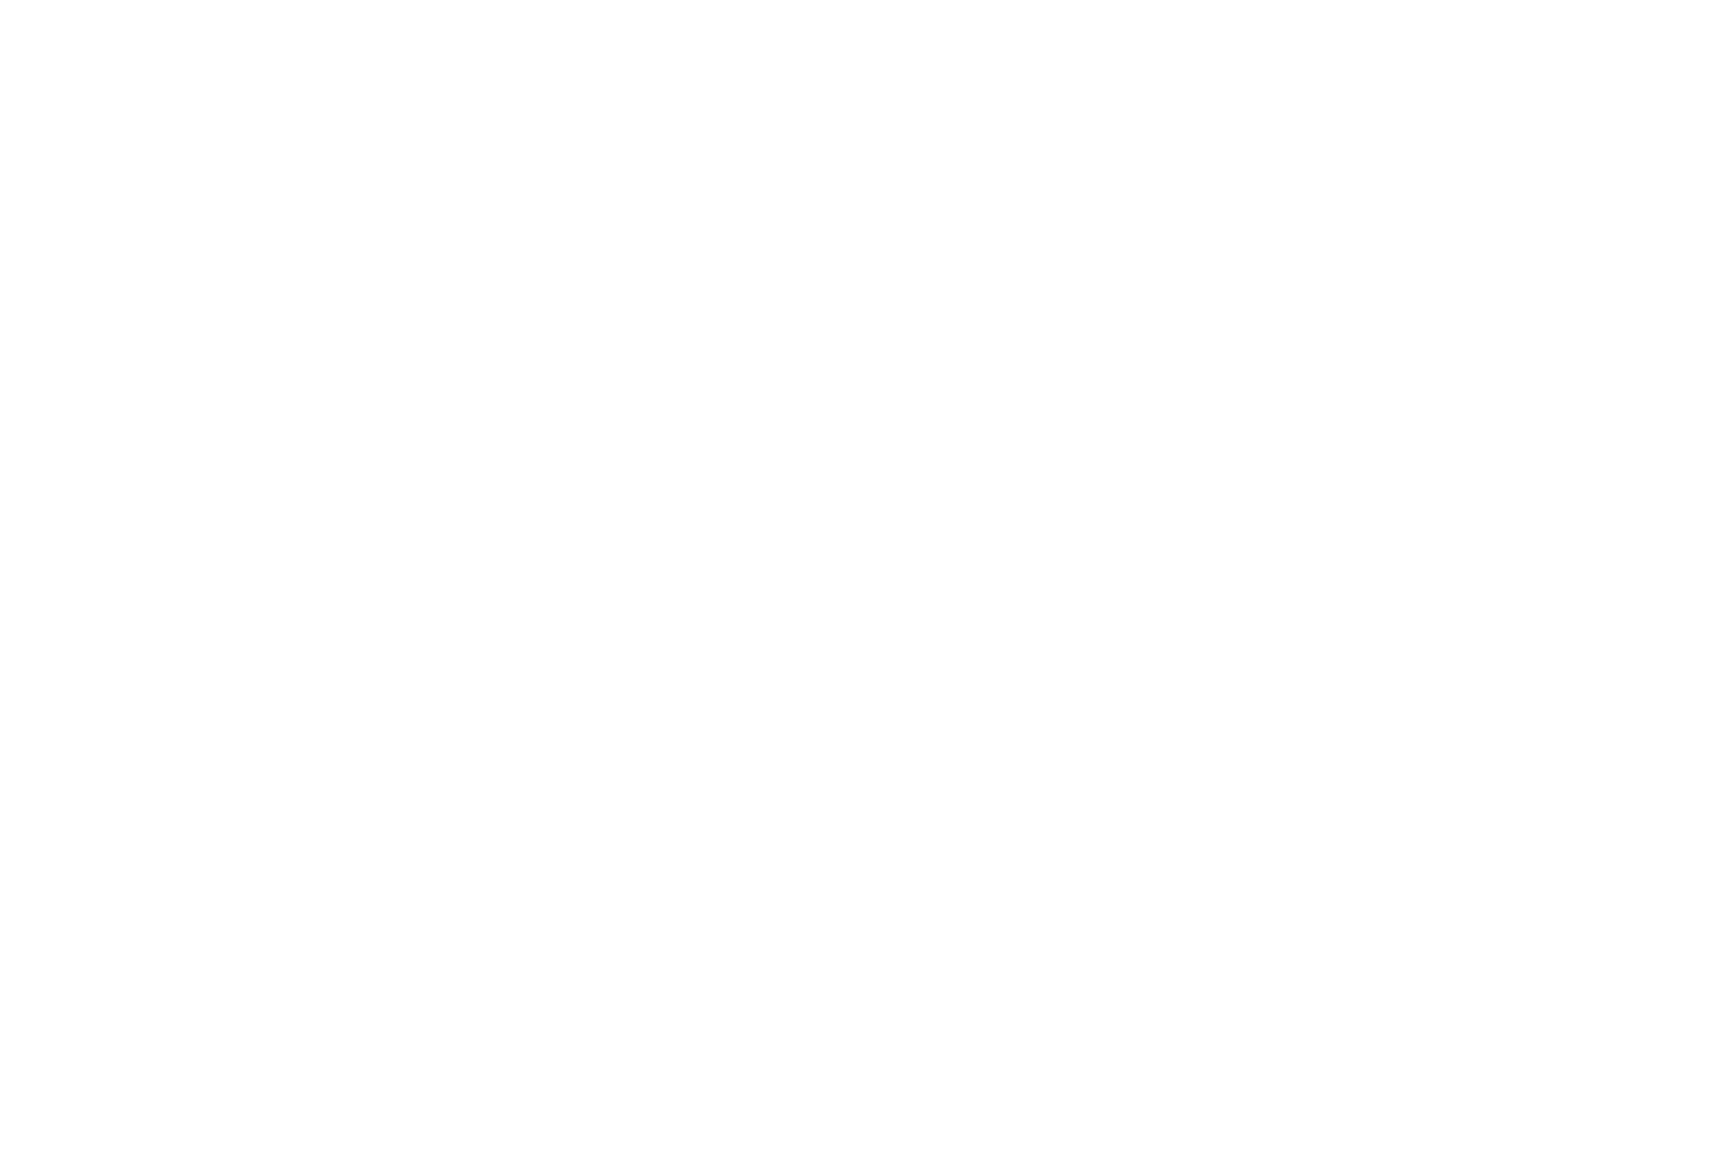 FINALIST-Page-Turner-Screenplays-2019_Black-1